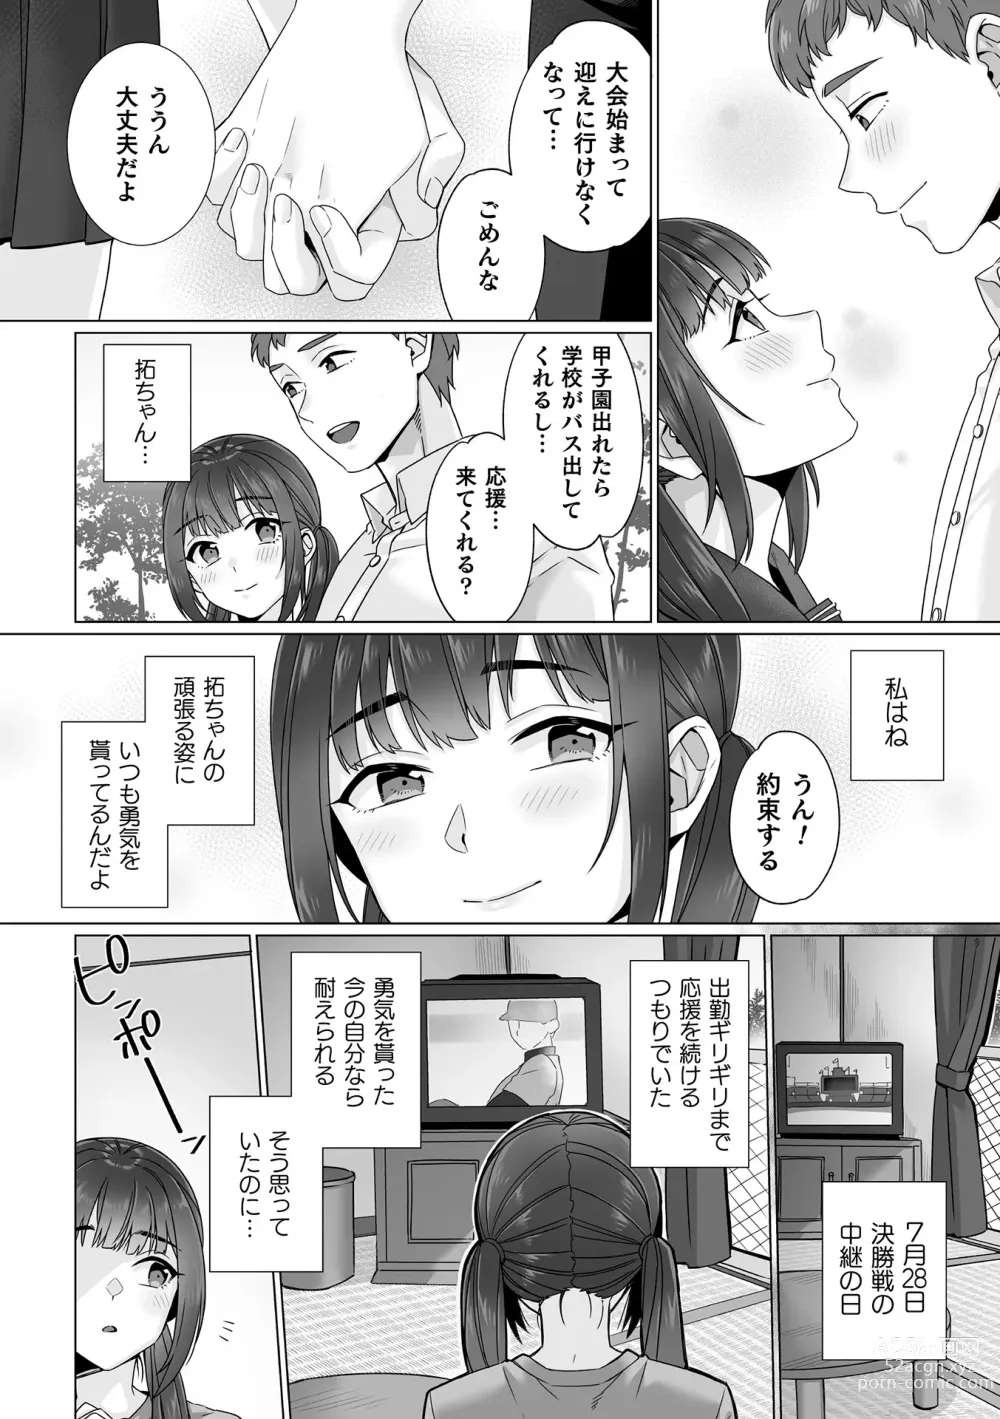 Page 8 of manga Junboku Joshikousei wa Oyaji Iro ni Somerarete Comic Ban Ch. 5